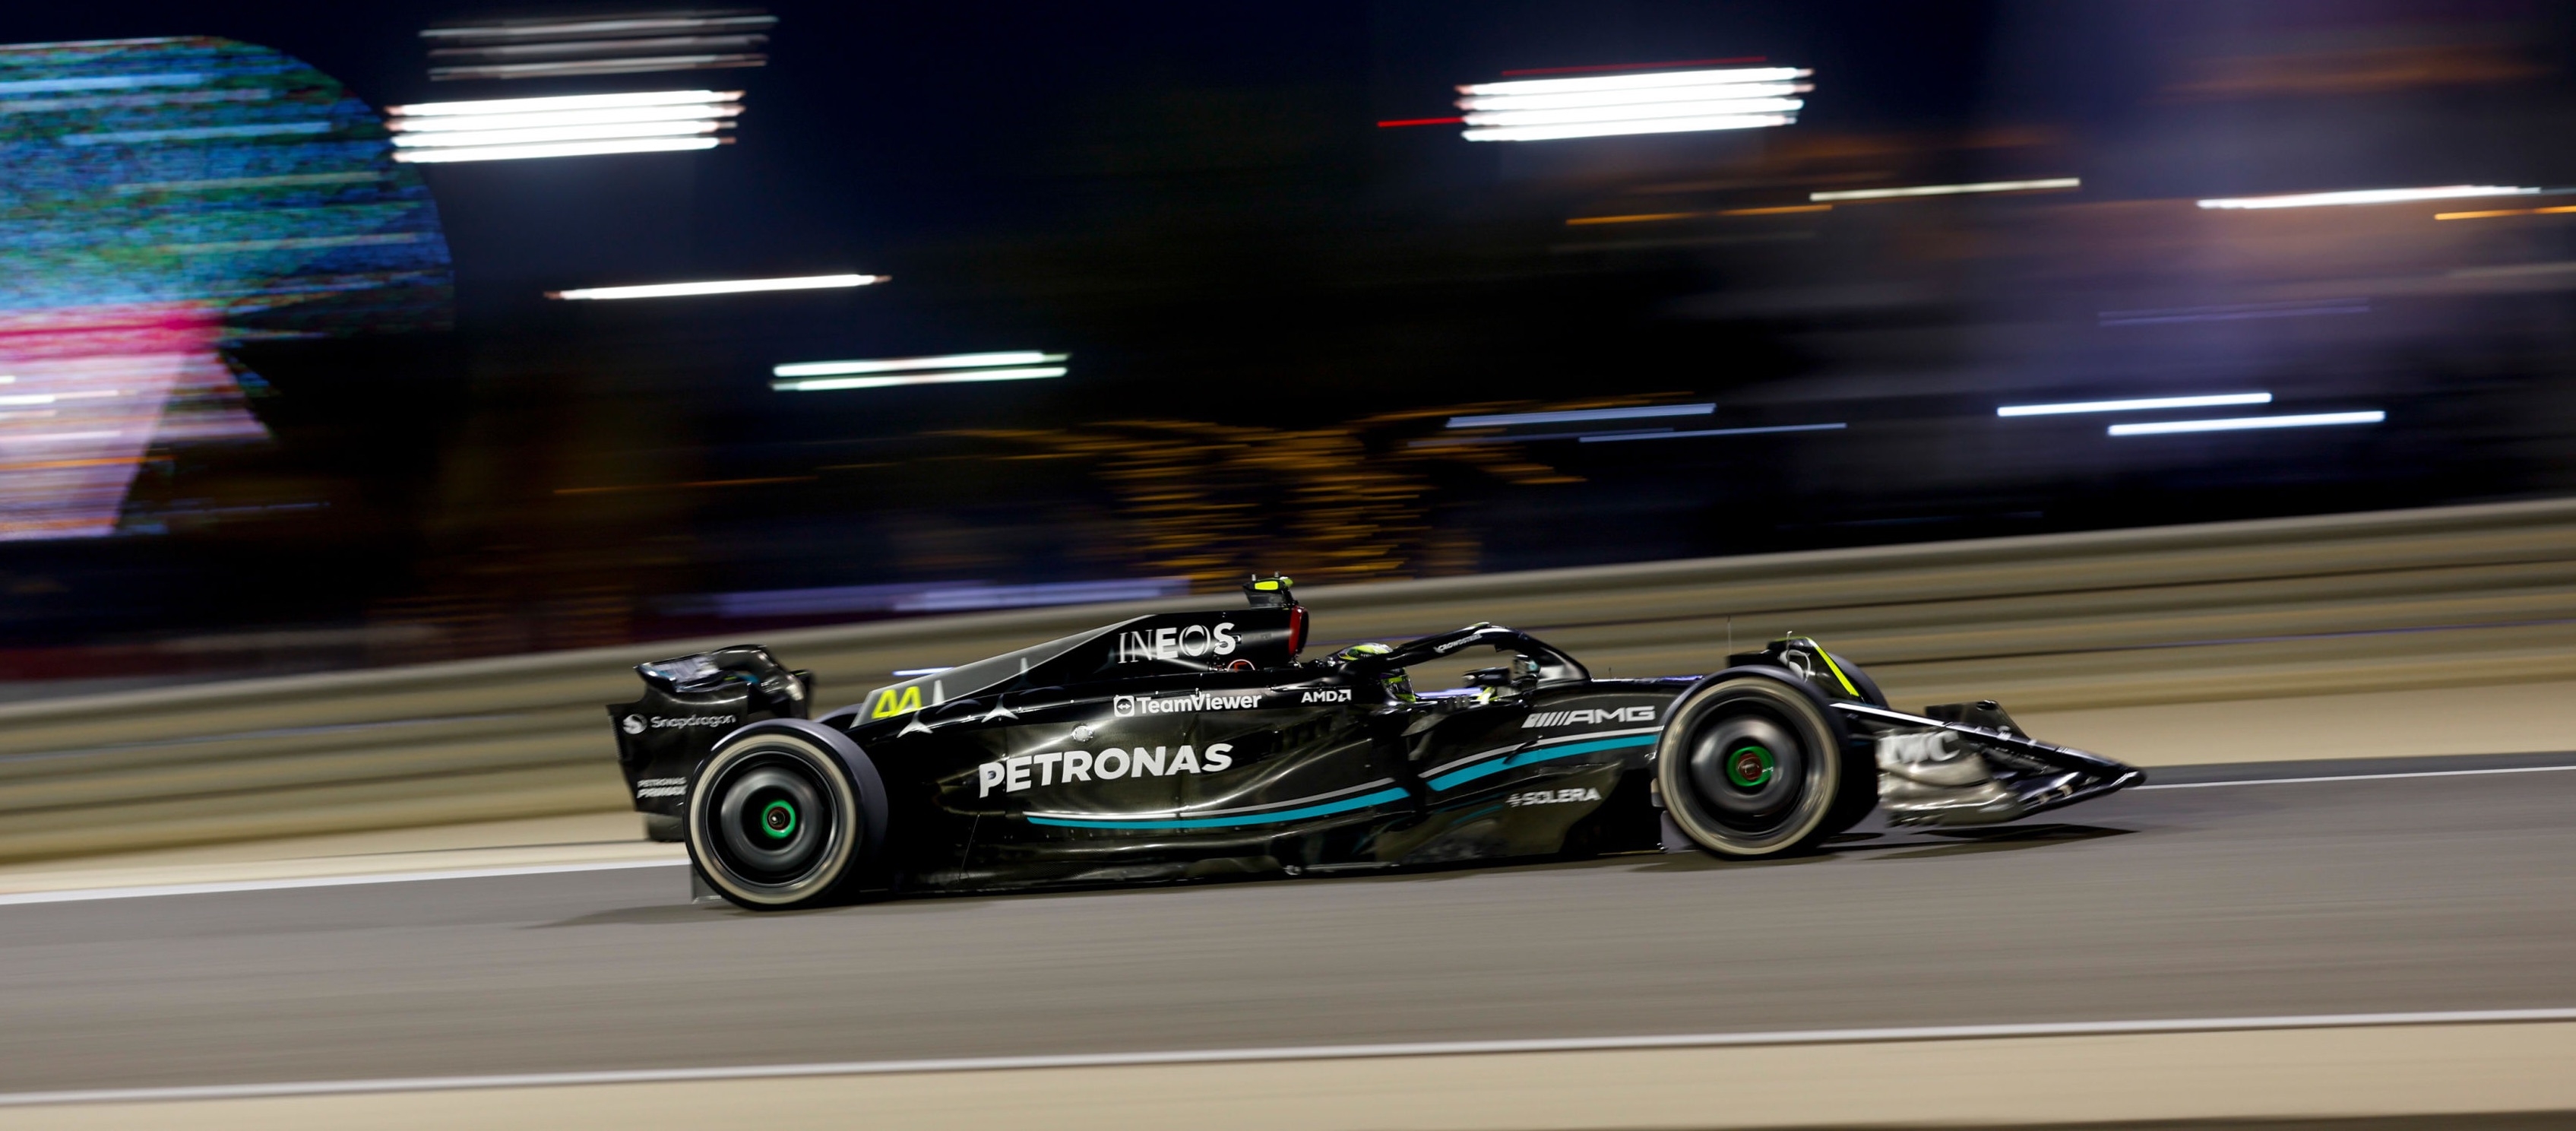 Kesal Karena Komplain Tak Digubris, Lewis Hamilton Desak Mercedes Perbaiki Mobil Musim Ini